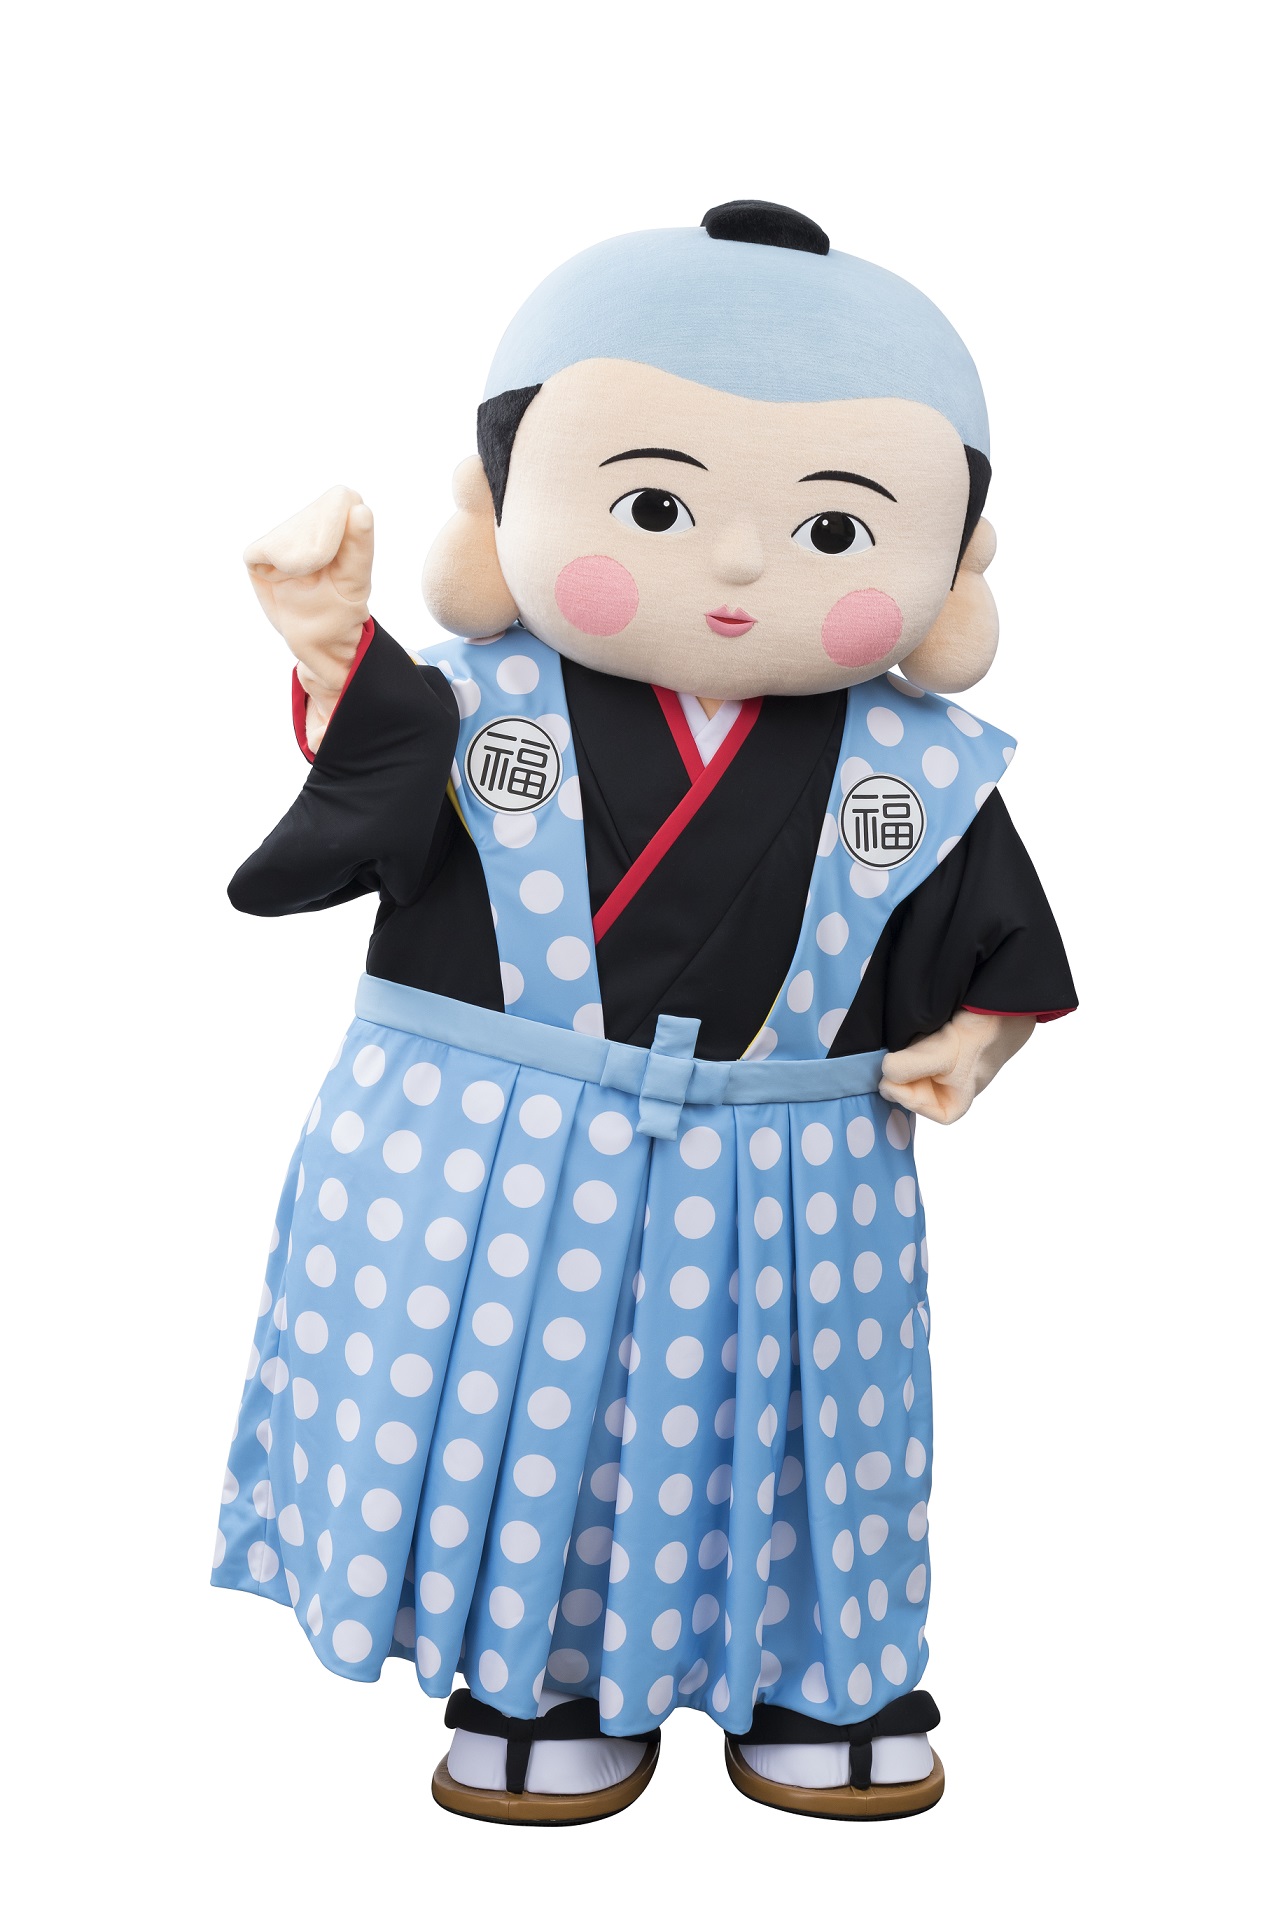 福助人形とじゃんけんができる Fukuskeフェア 開催のお知らせ 福助株式会社のプレスリリース